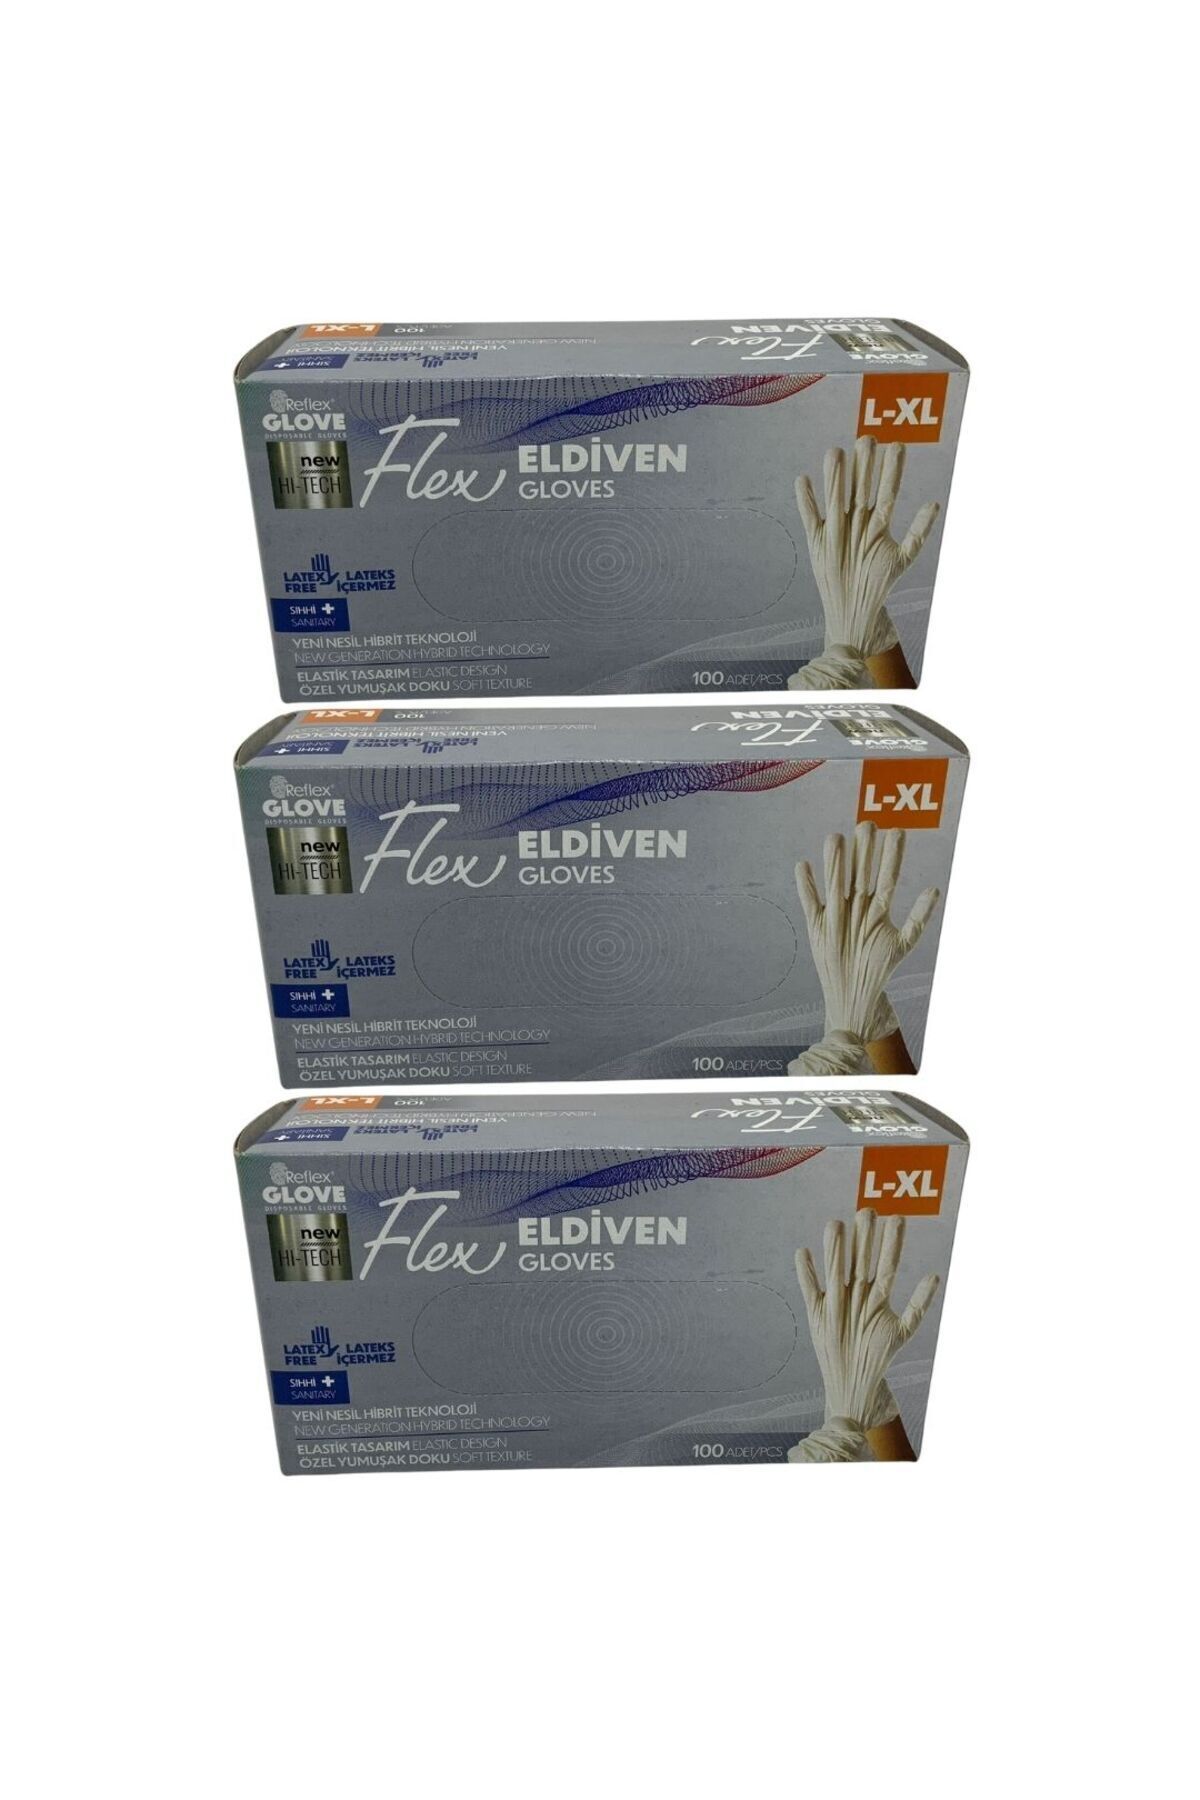 Reflex Glove Flex Eldiven L-XL 100 Adet 3 Adet